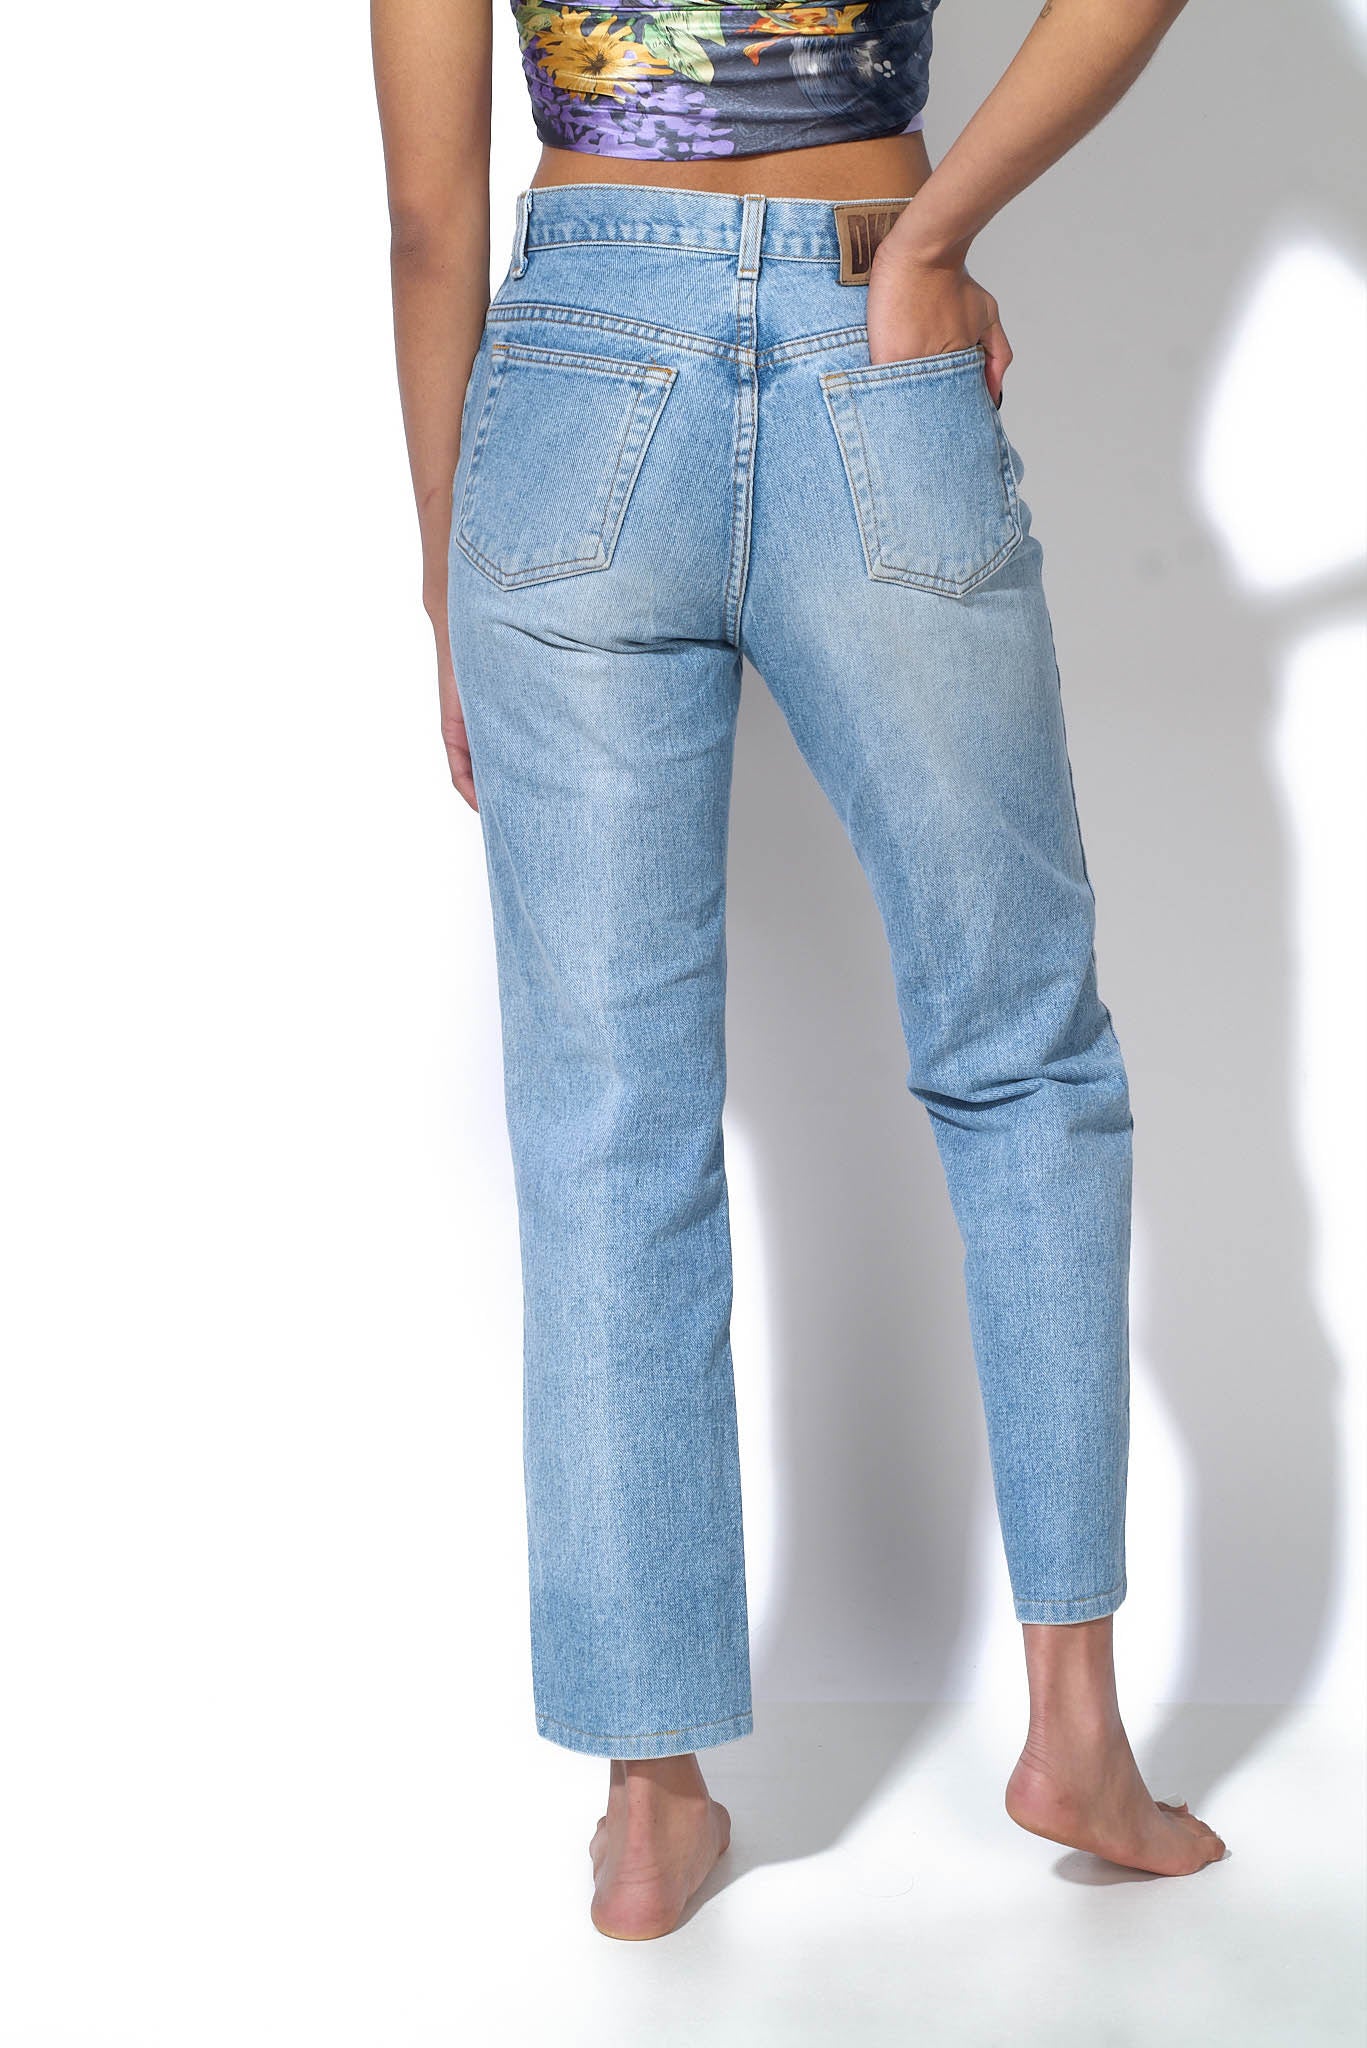 Thrust Det er billigt Doven DKNY Jeans – Vintage Society